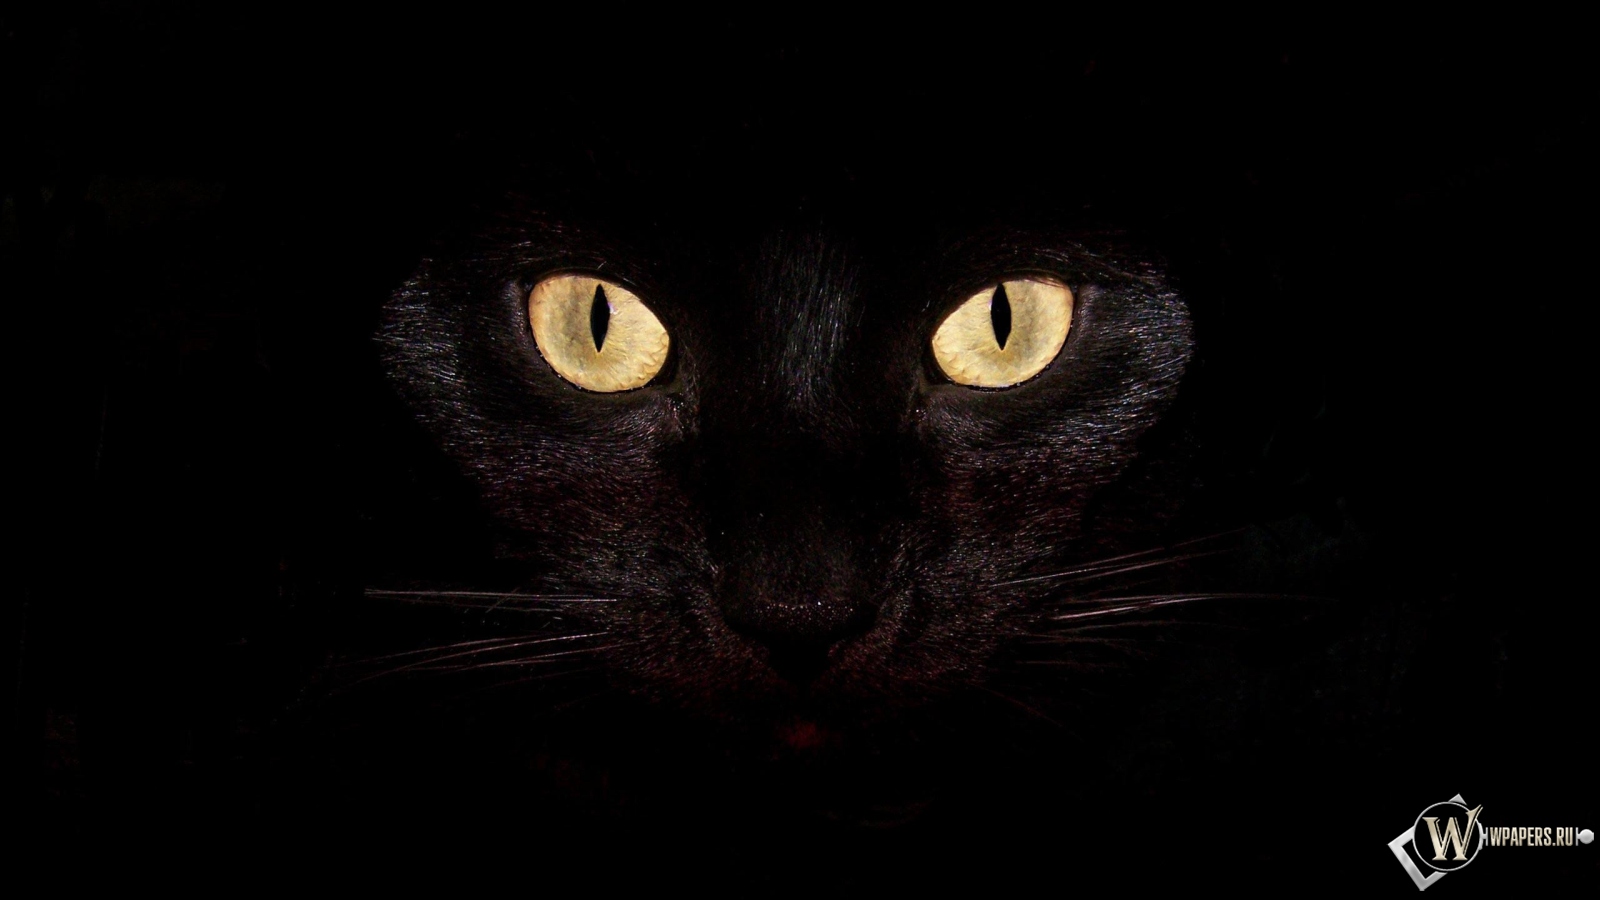 Черная кошка на чернофм фоне 1600x900